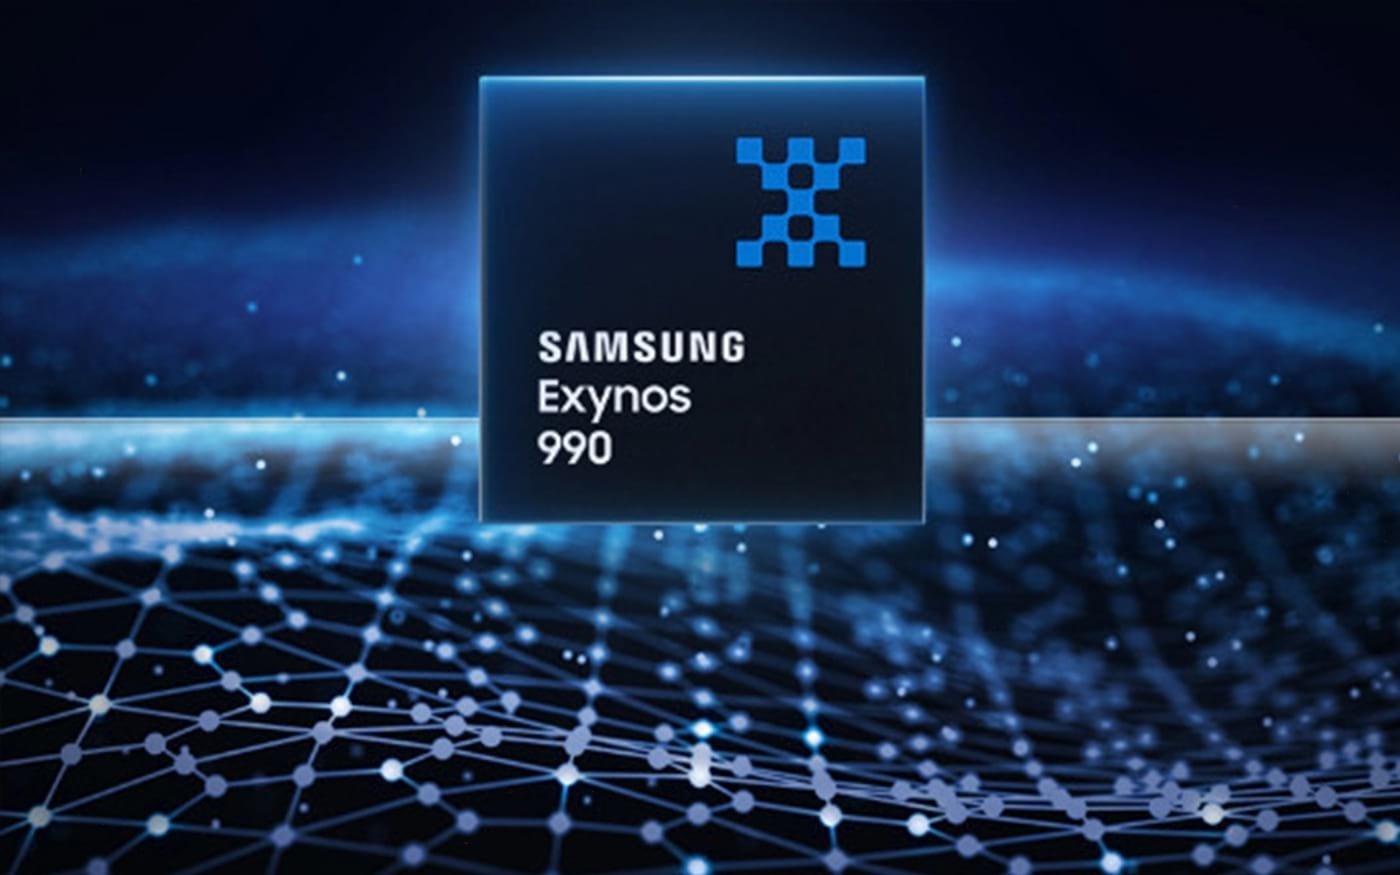 Samsung exynos